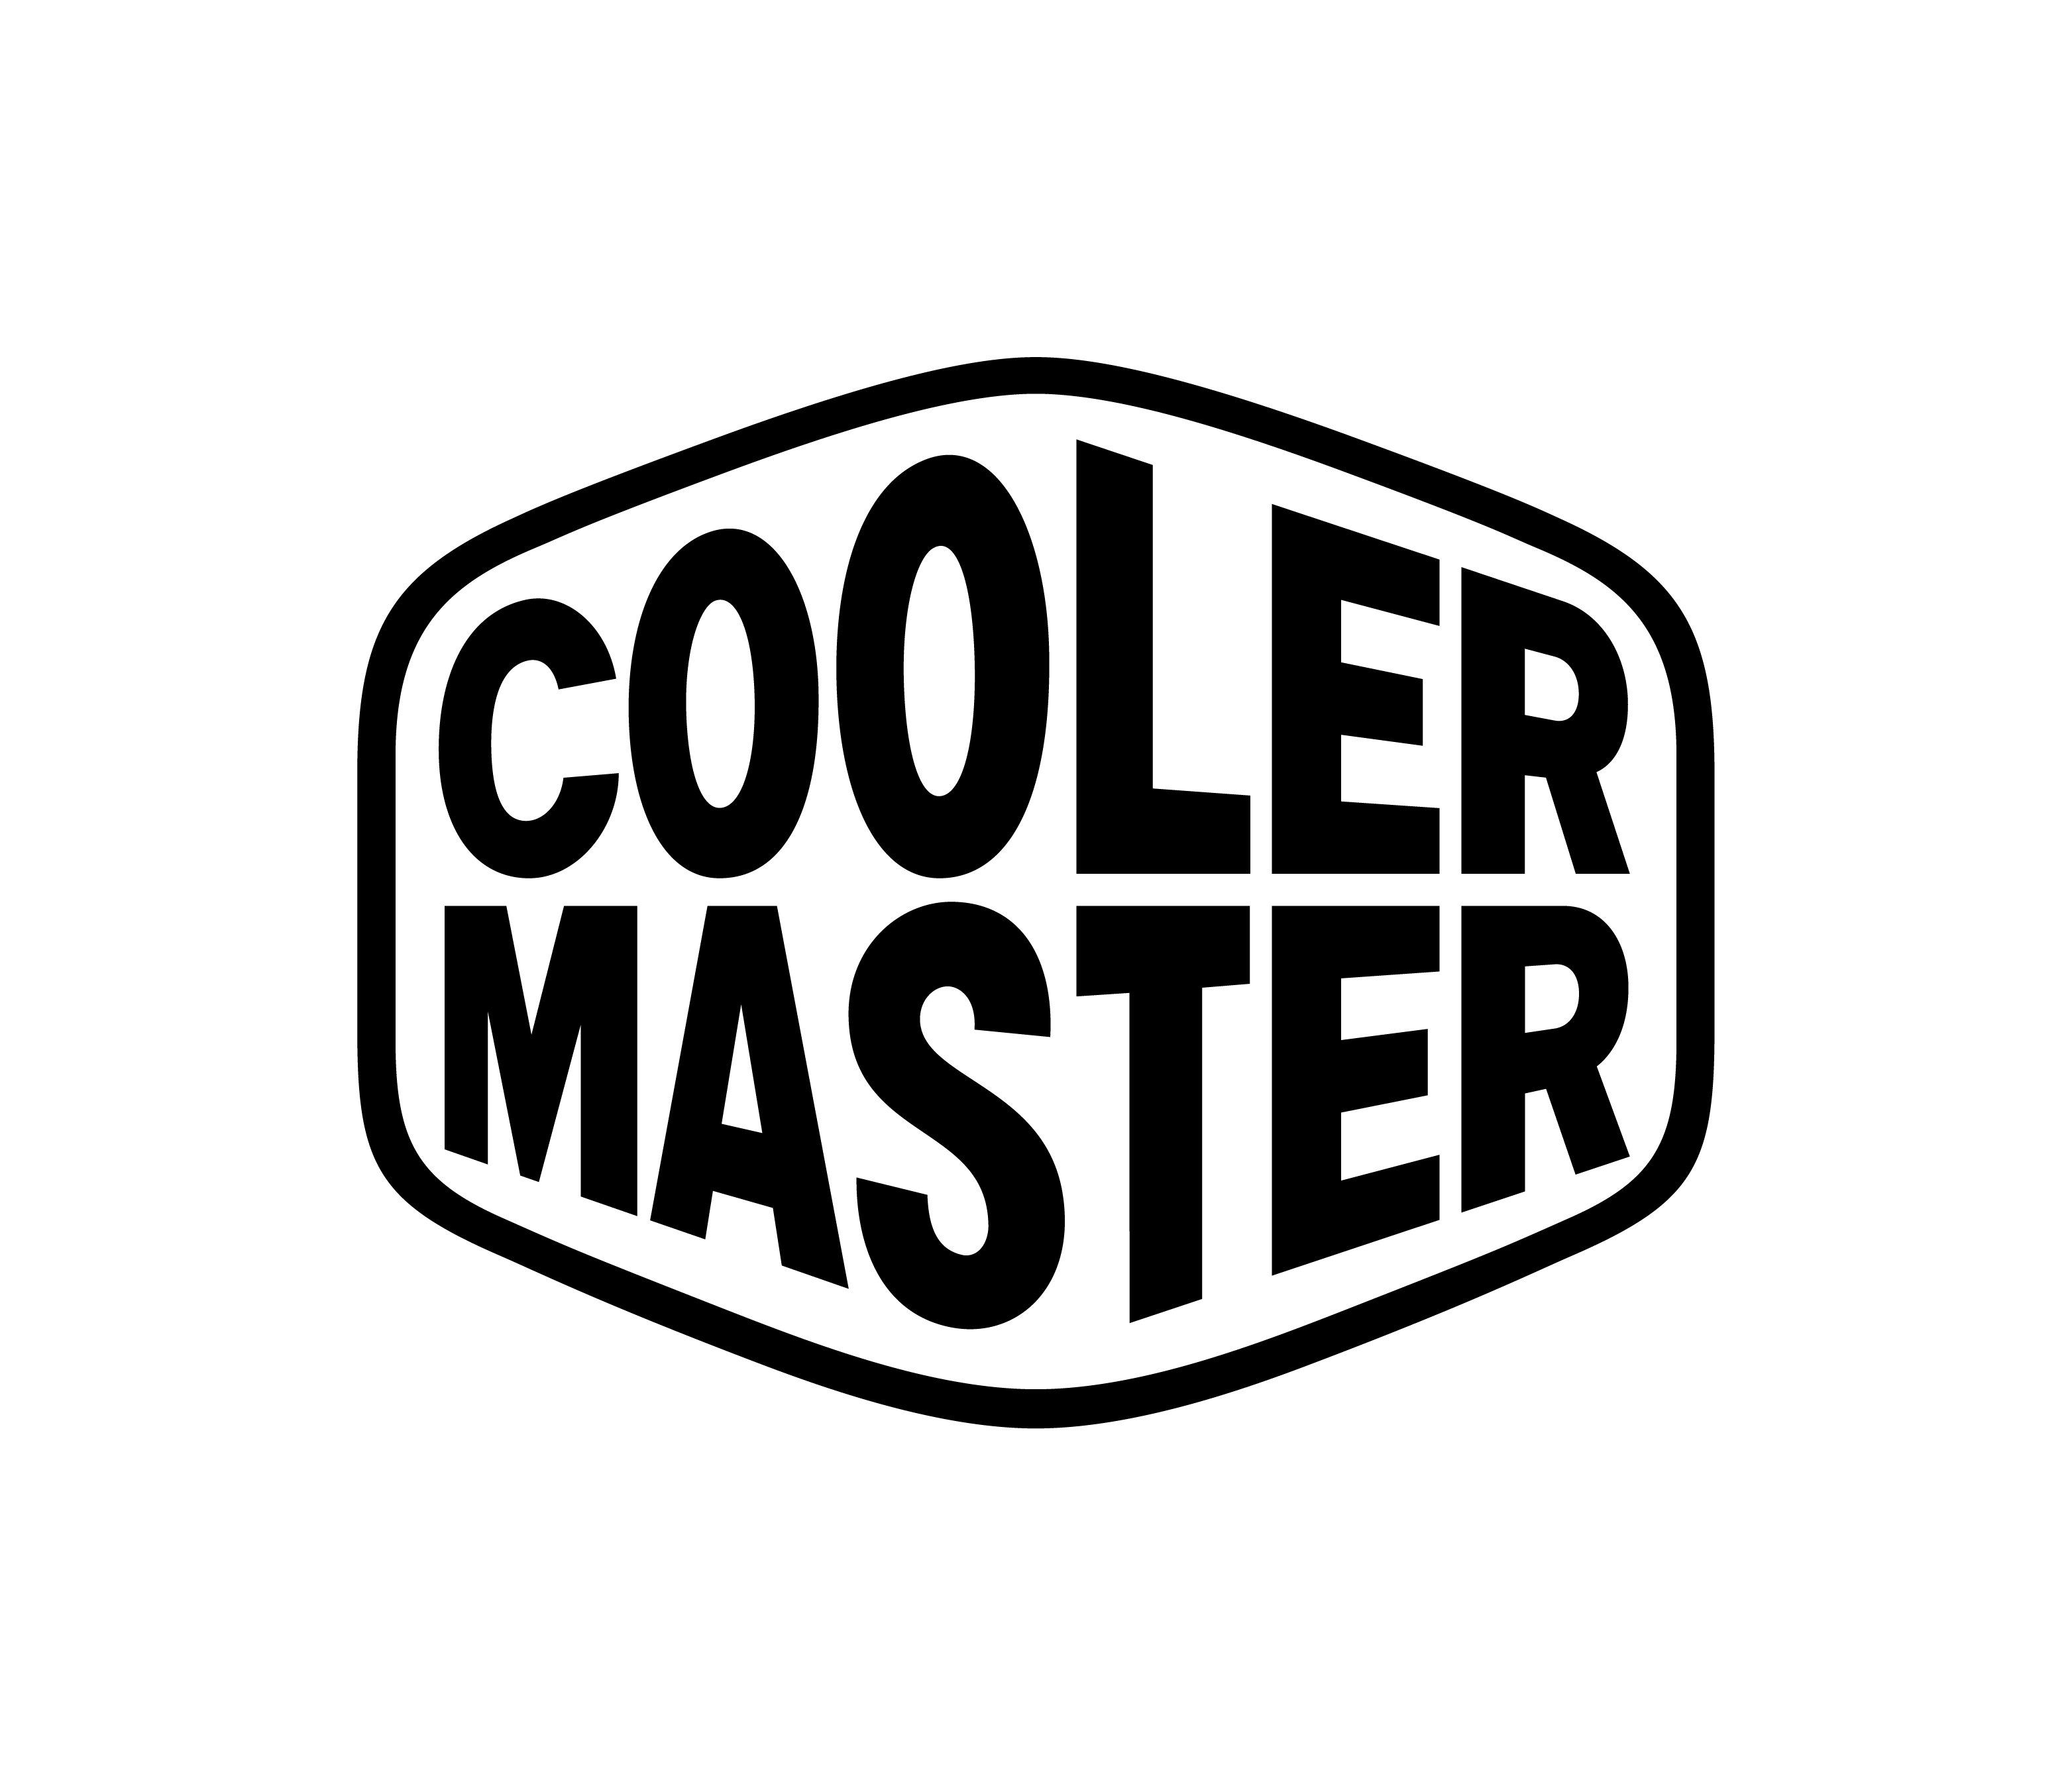 Home Cooler Master